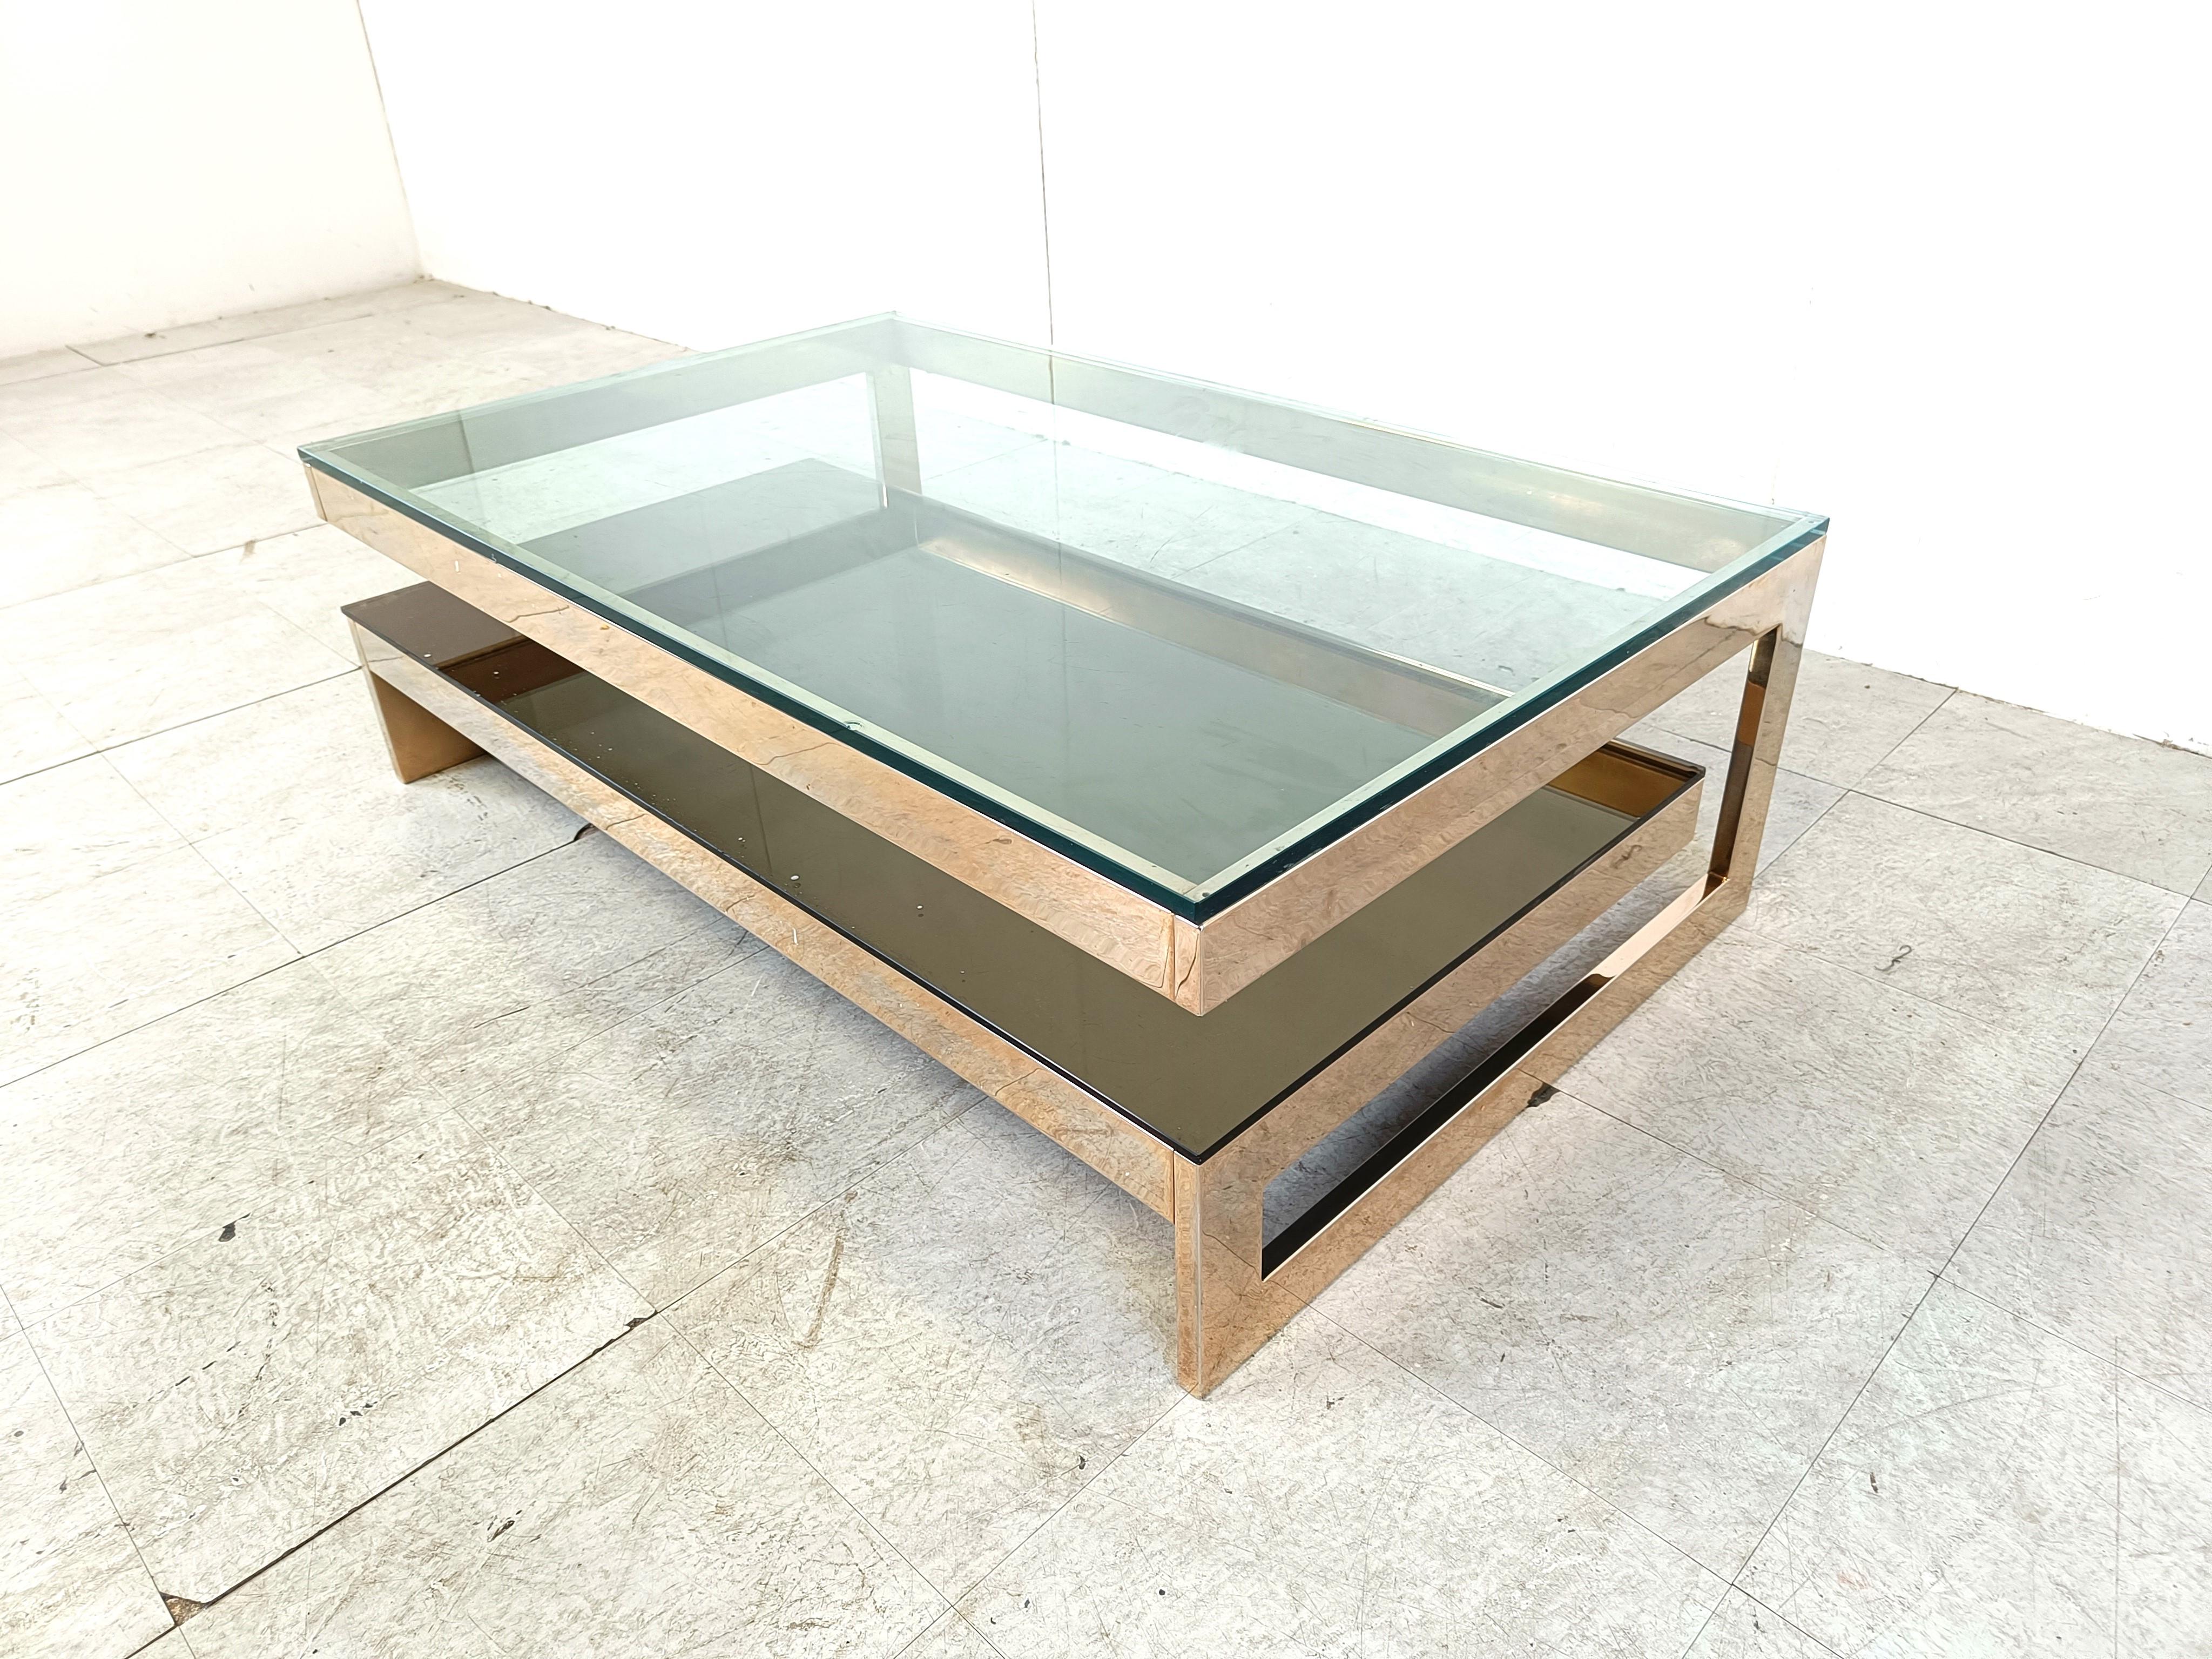 Table basse à deux niveaux en verre transparent épais et recouvert d'or 23kt de qualité, fabriquée par Belgochrom.

Cette table est un modèle populaire, appelé modèle 